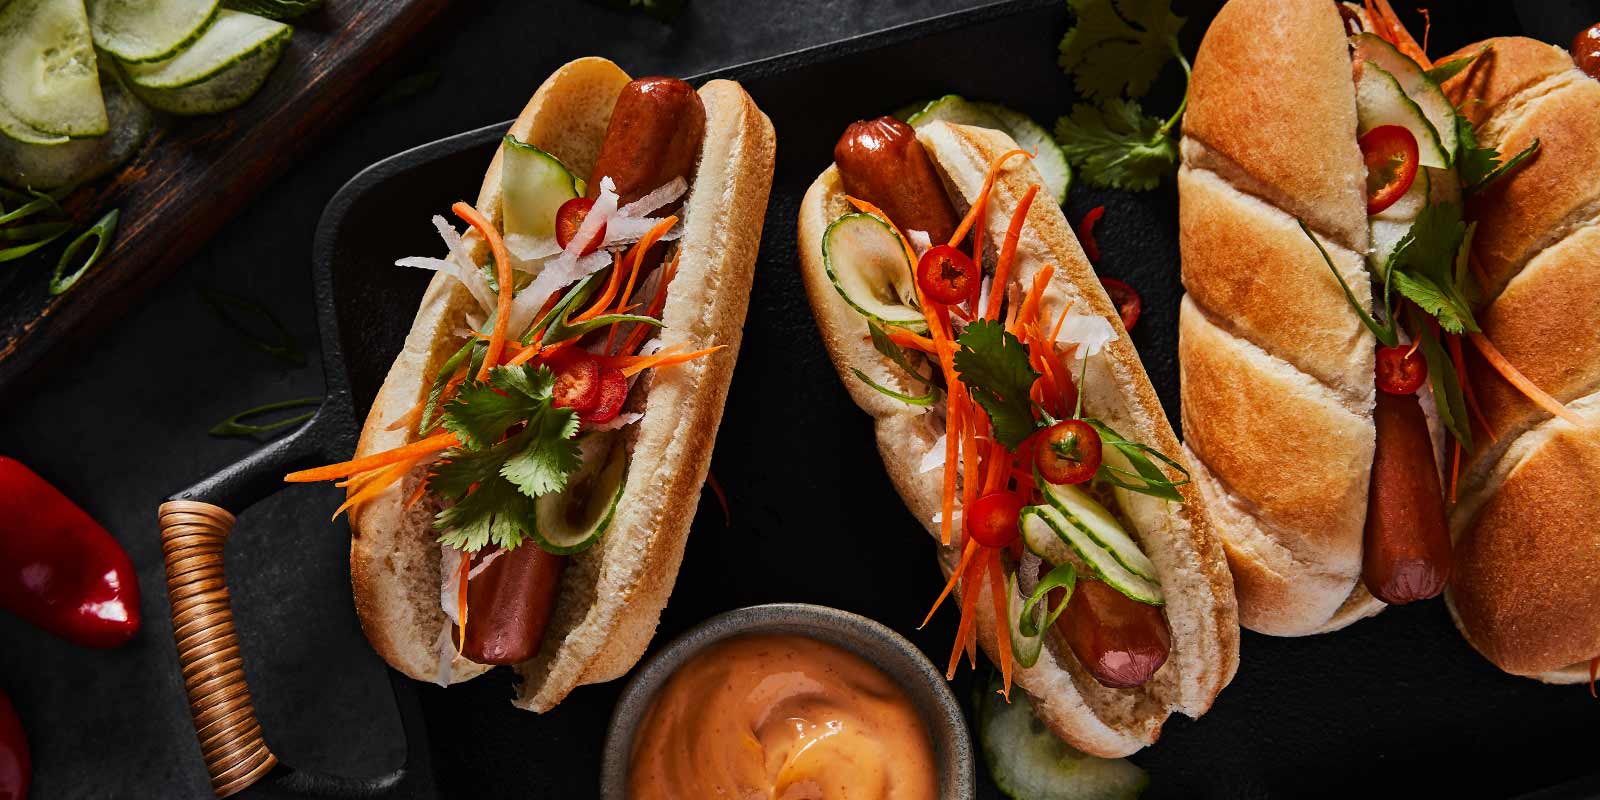 Hot-dog style Banh Mi épicé à la sriracha